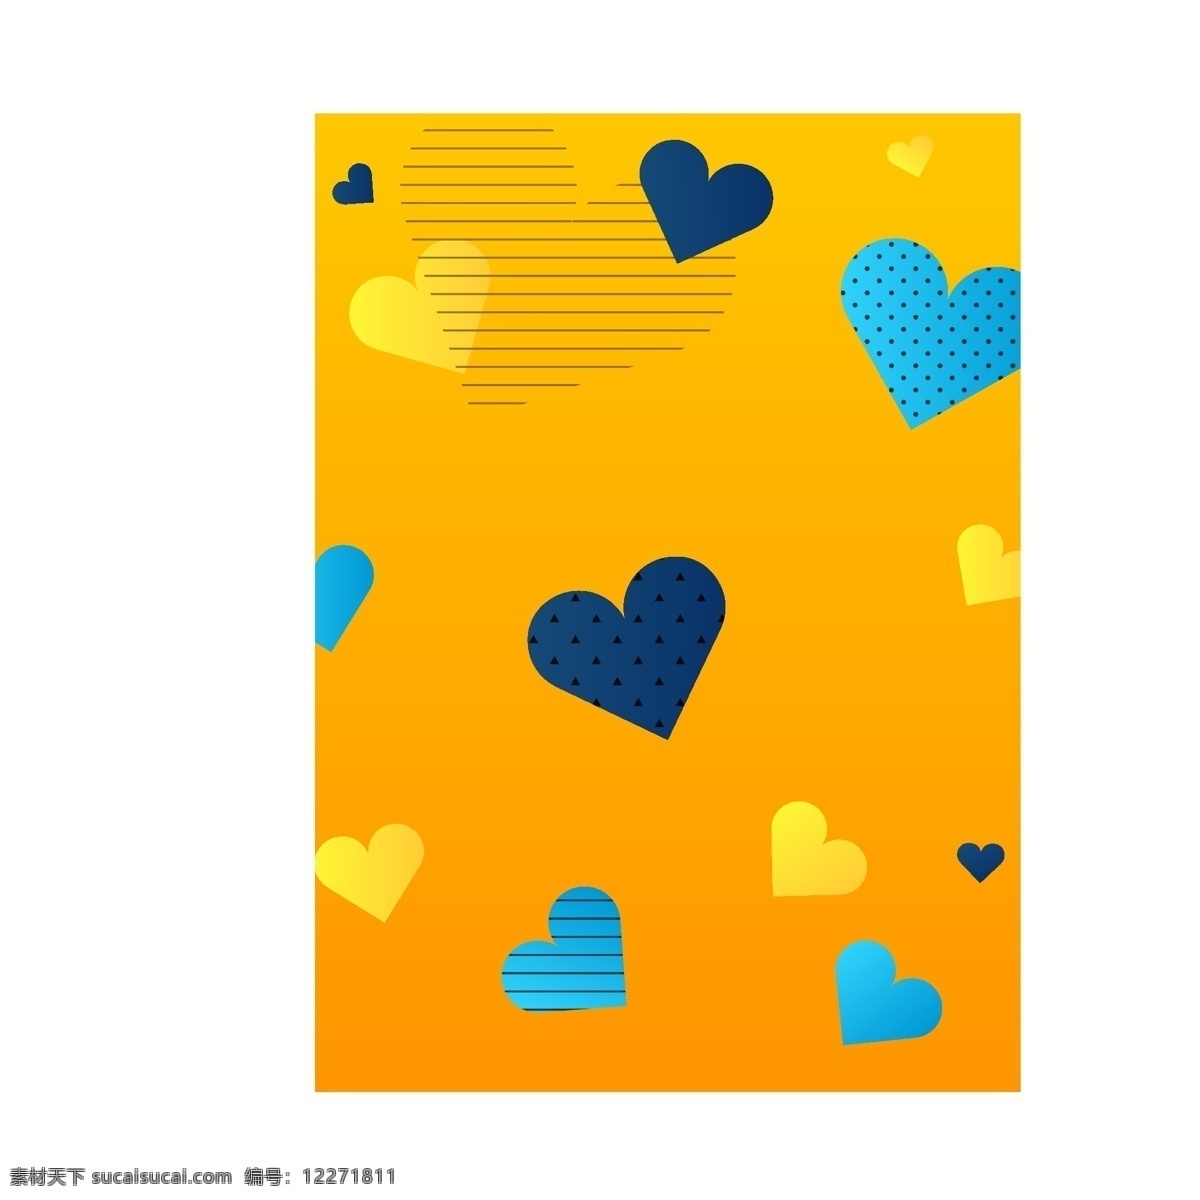 广告 背景 黄色 爱心 气球 矢量 元素